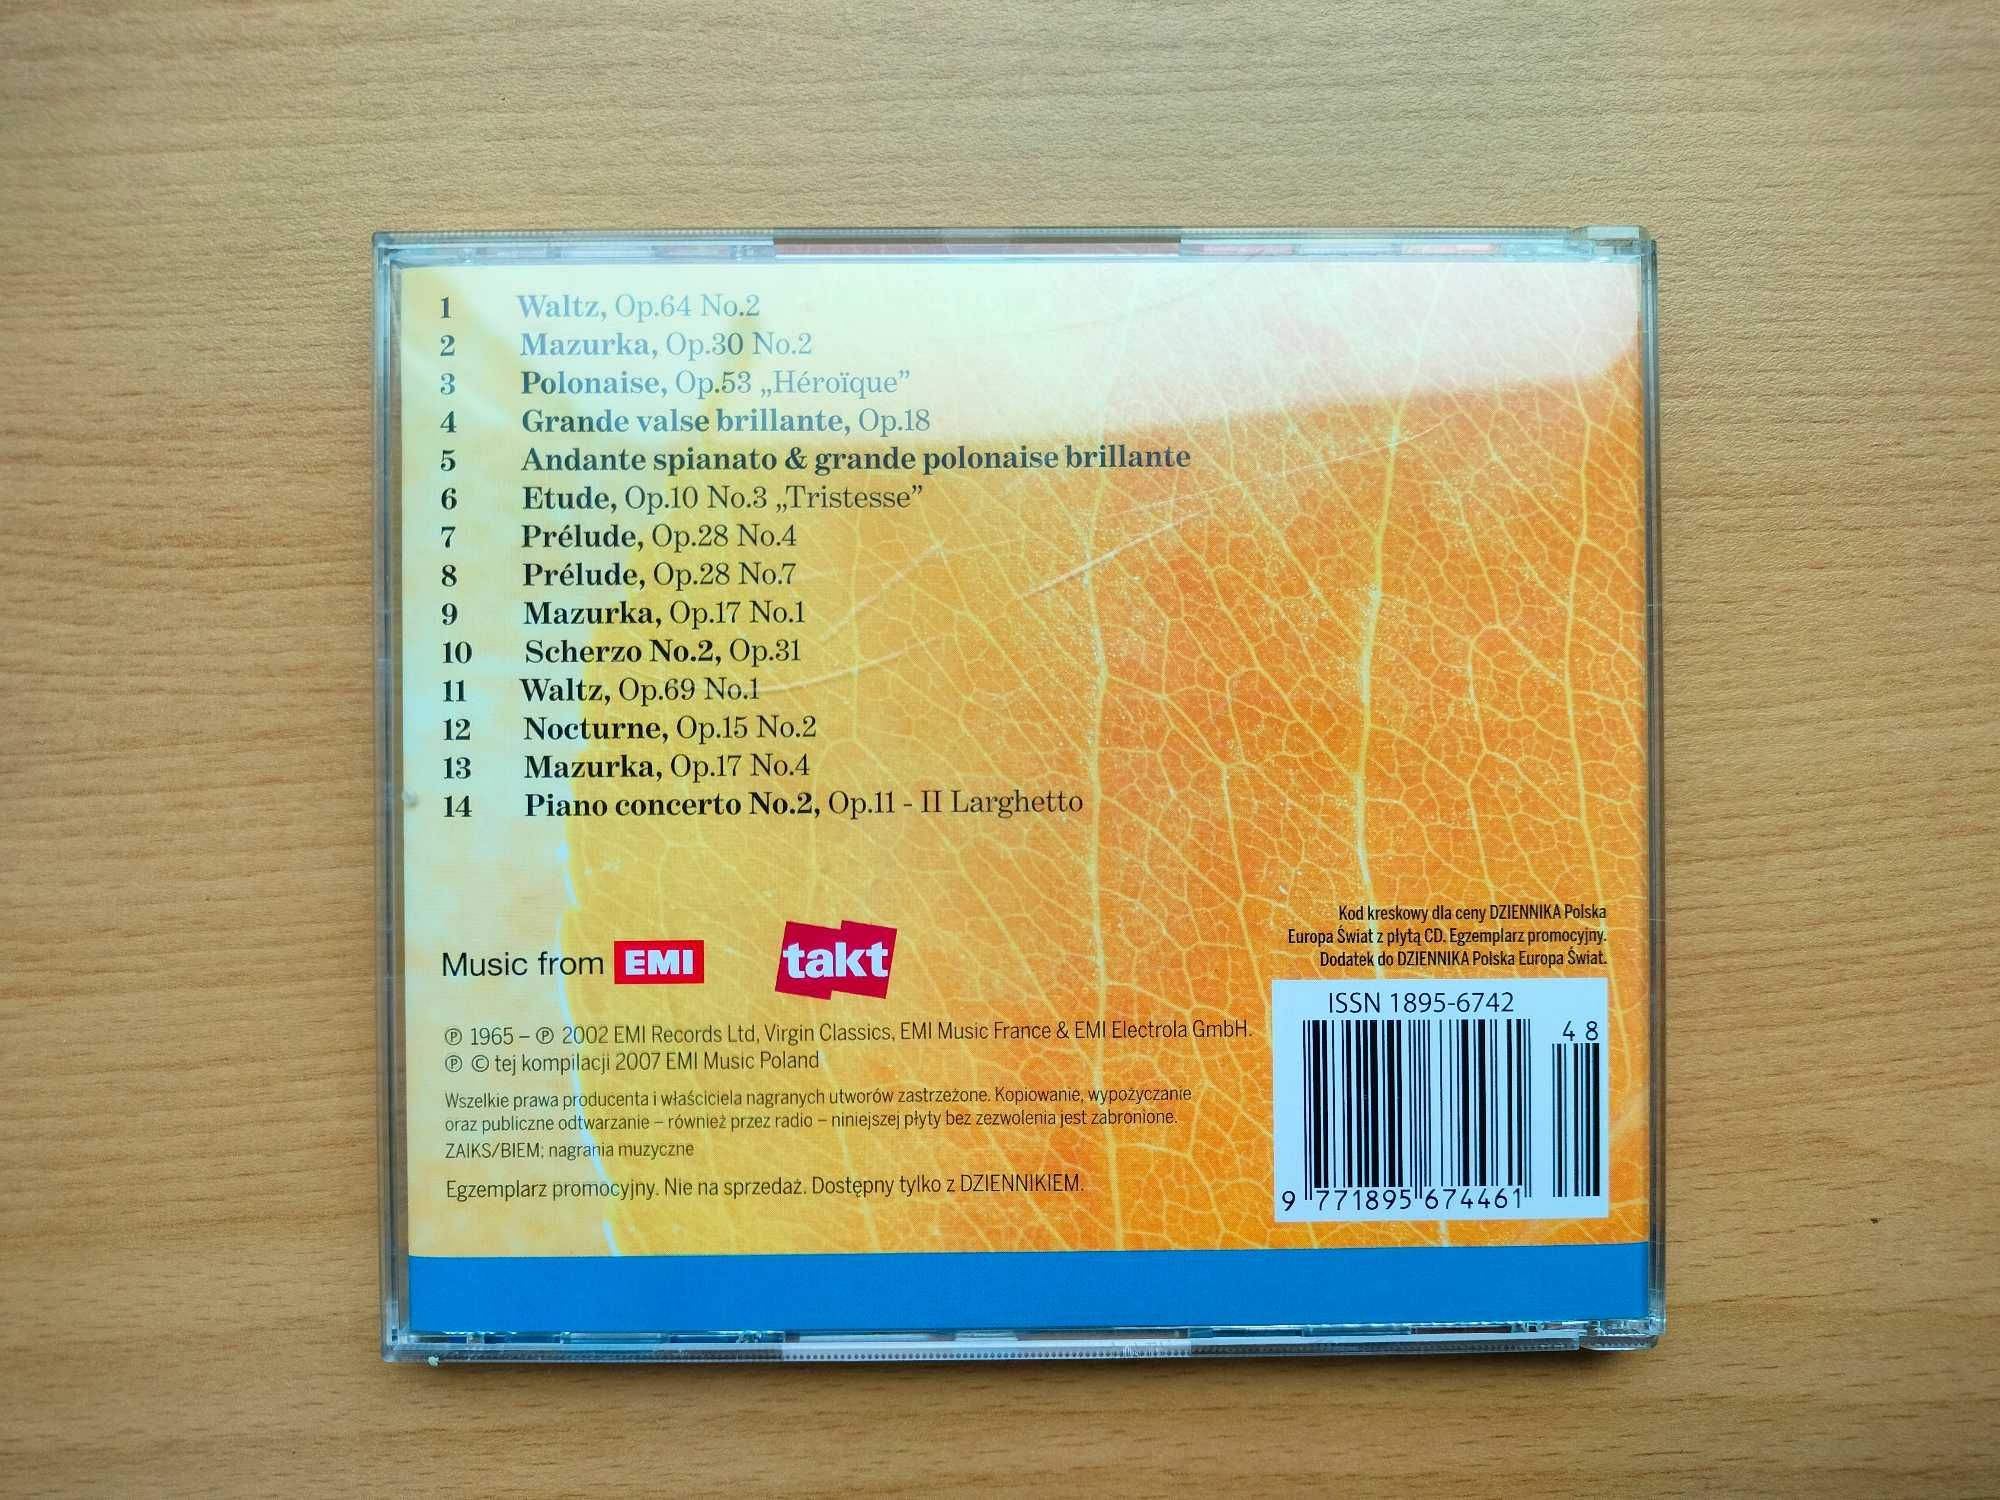 "Chopin. Muzyczna akademia rozwoju" - CD z muzyką poważną dla dzieci